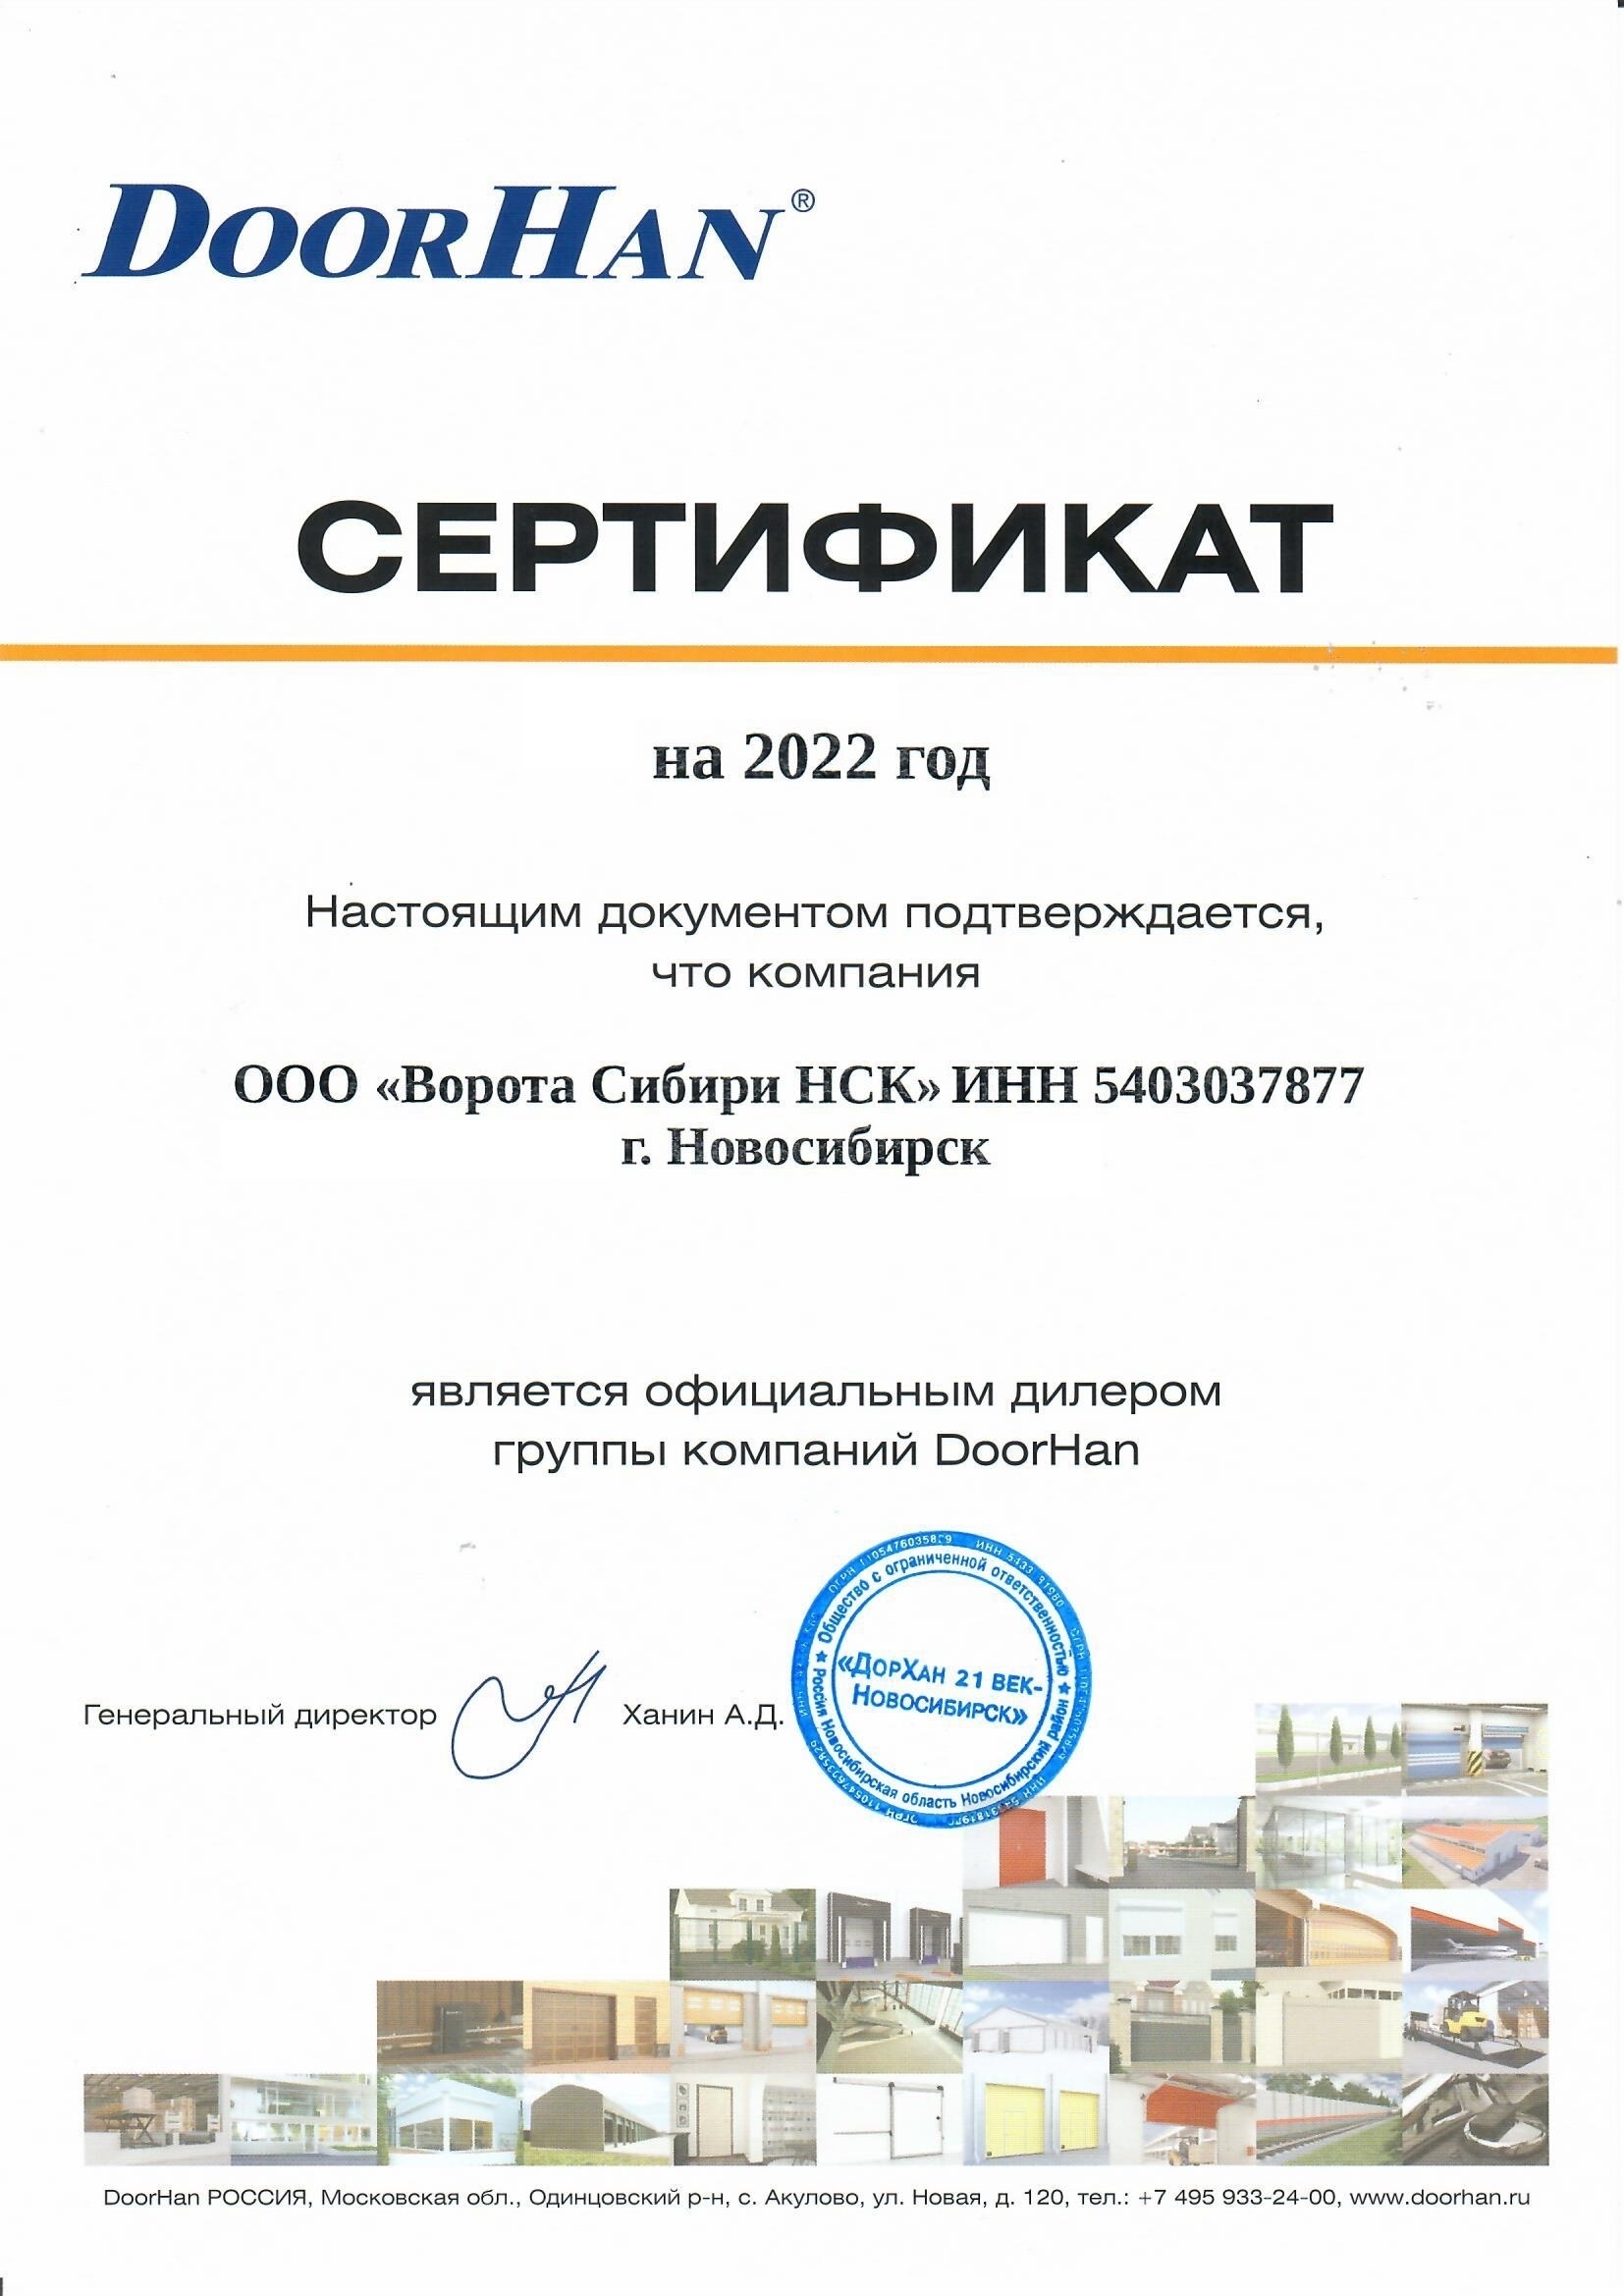 Сертификат официального дилера ГК "DOORHAN"